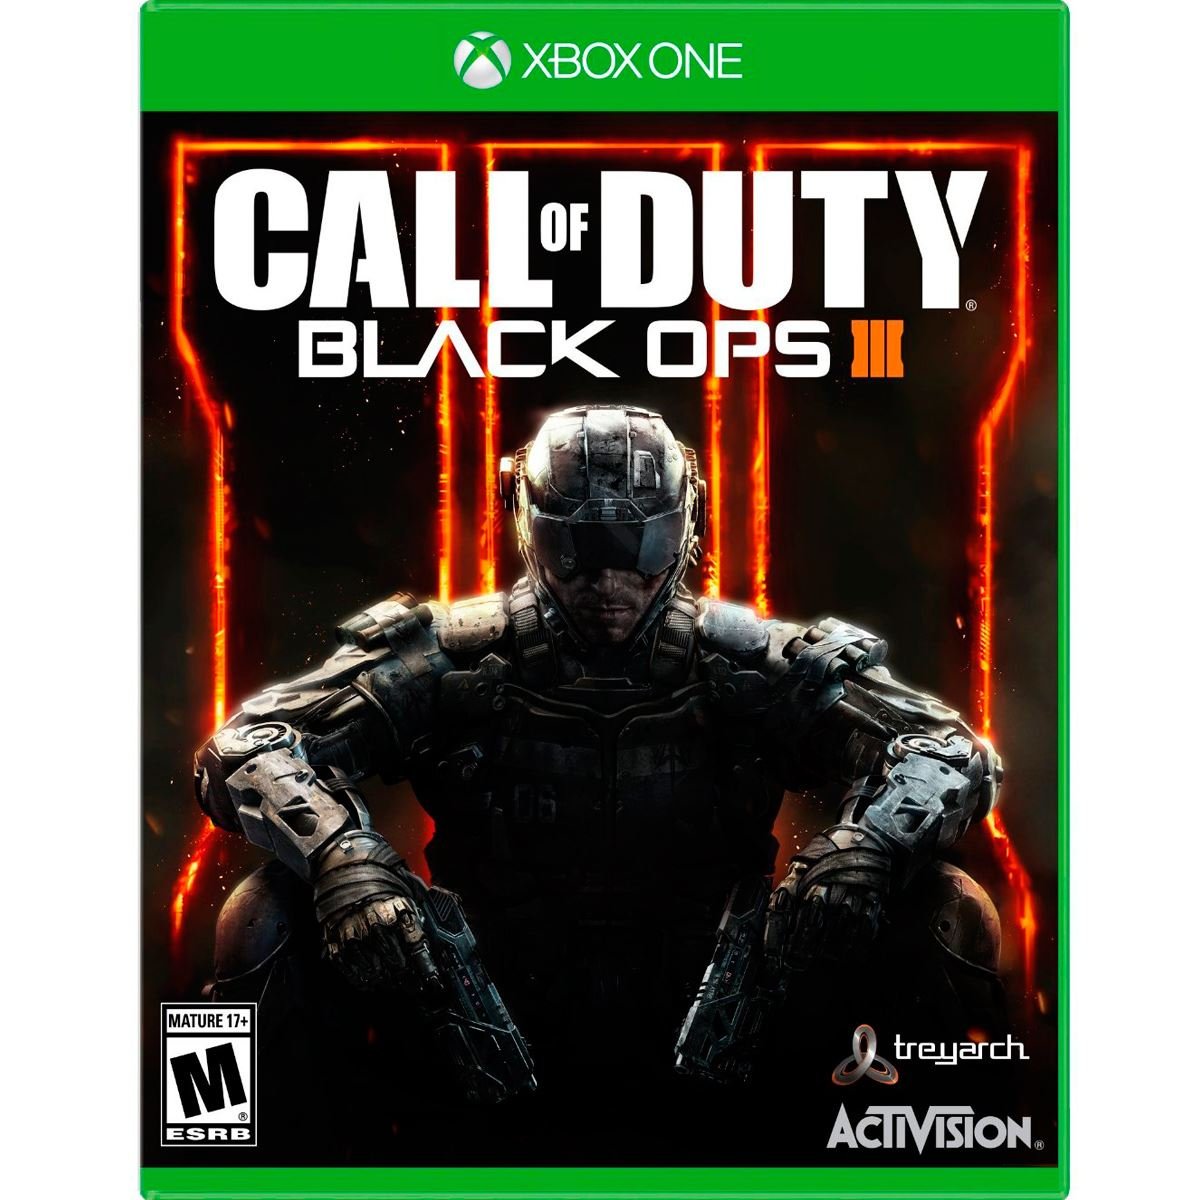 Xbox One Call Of Duty Black Ops III